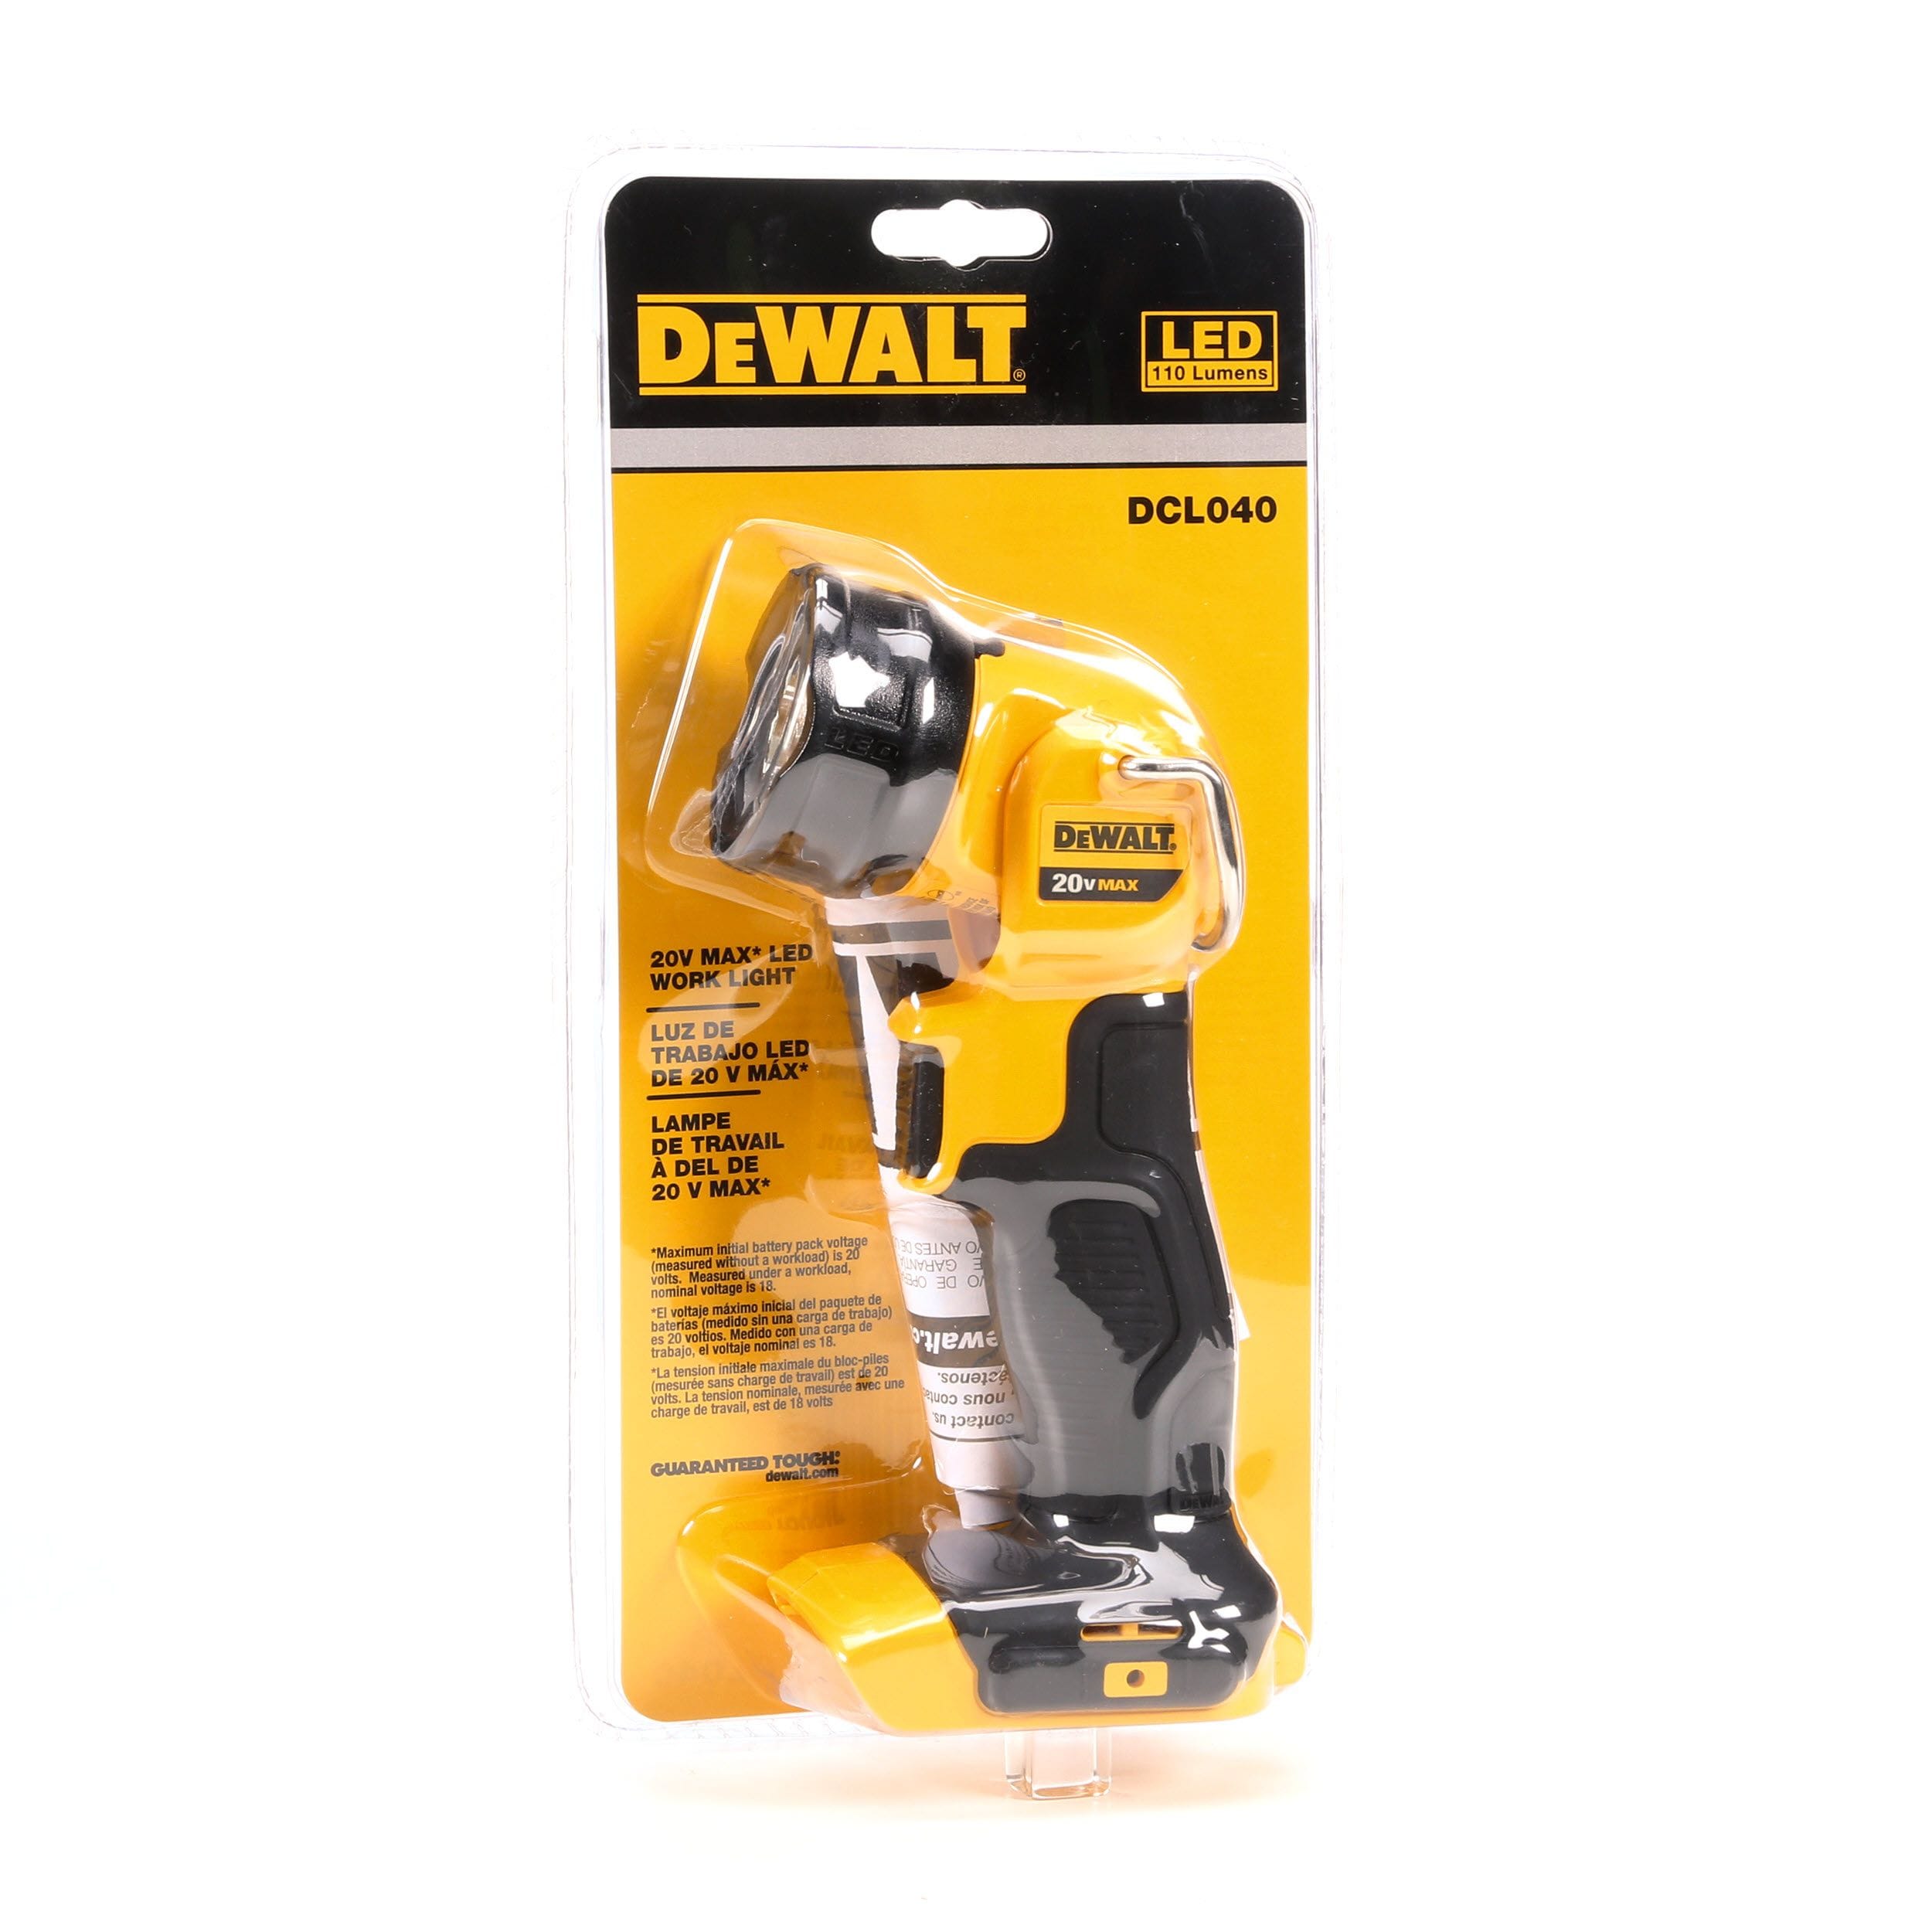 Dewalt DCL040 LED Torch Flashlight Work Light 18V Body Only Workshop Tools 